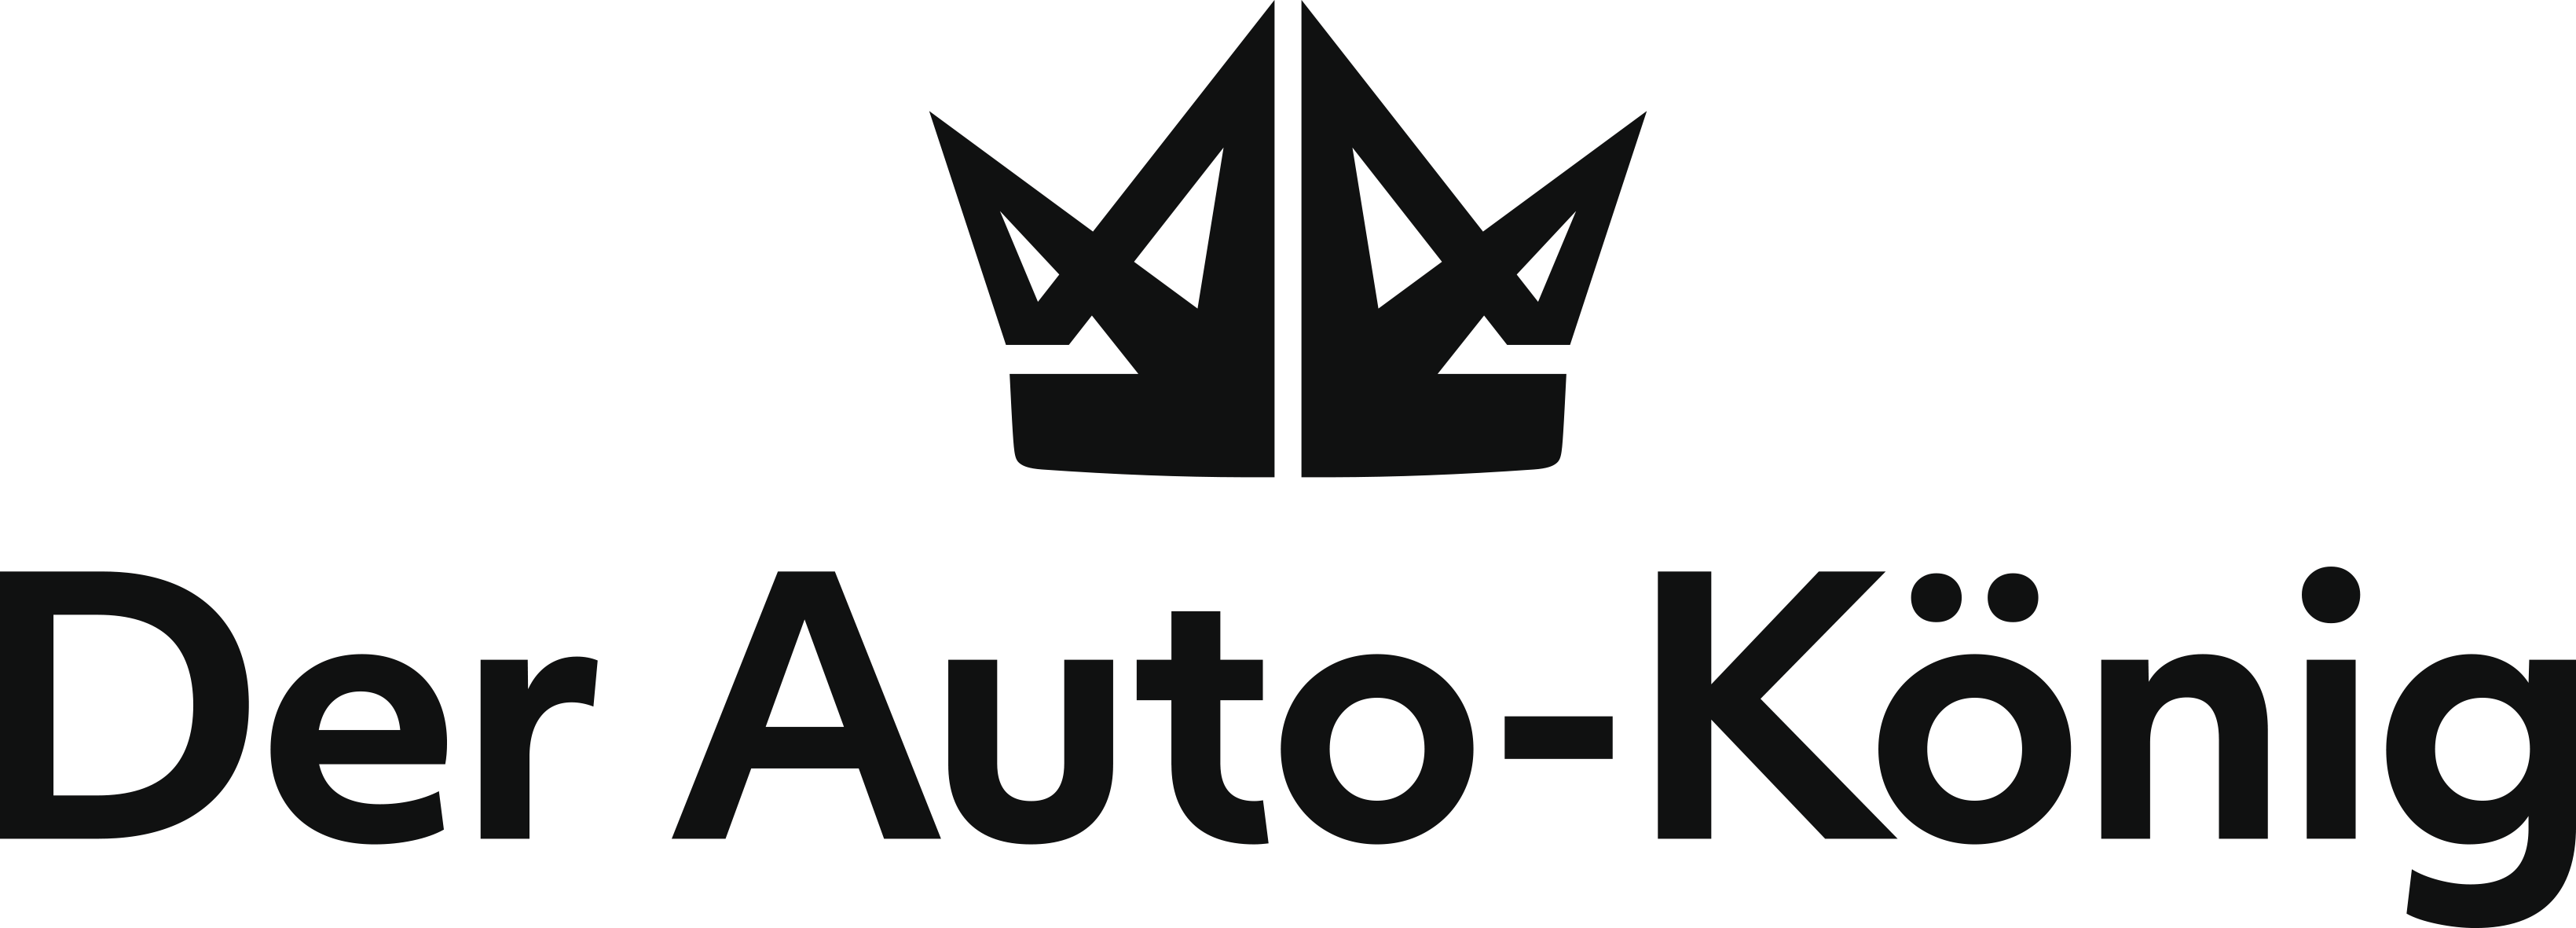 Autohaus König